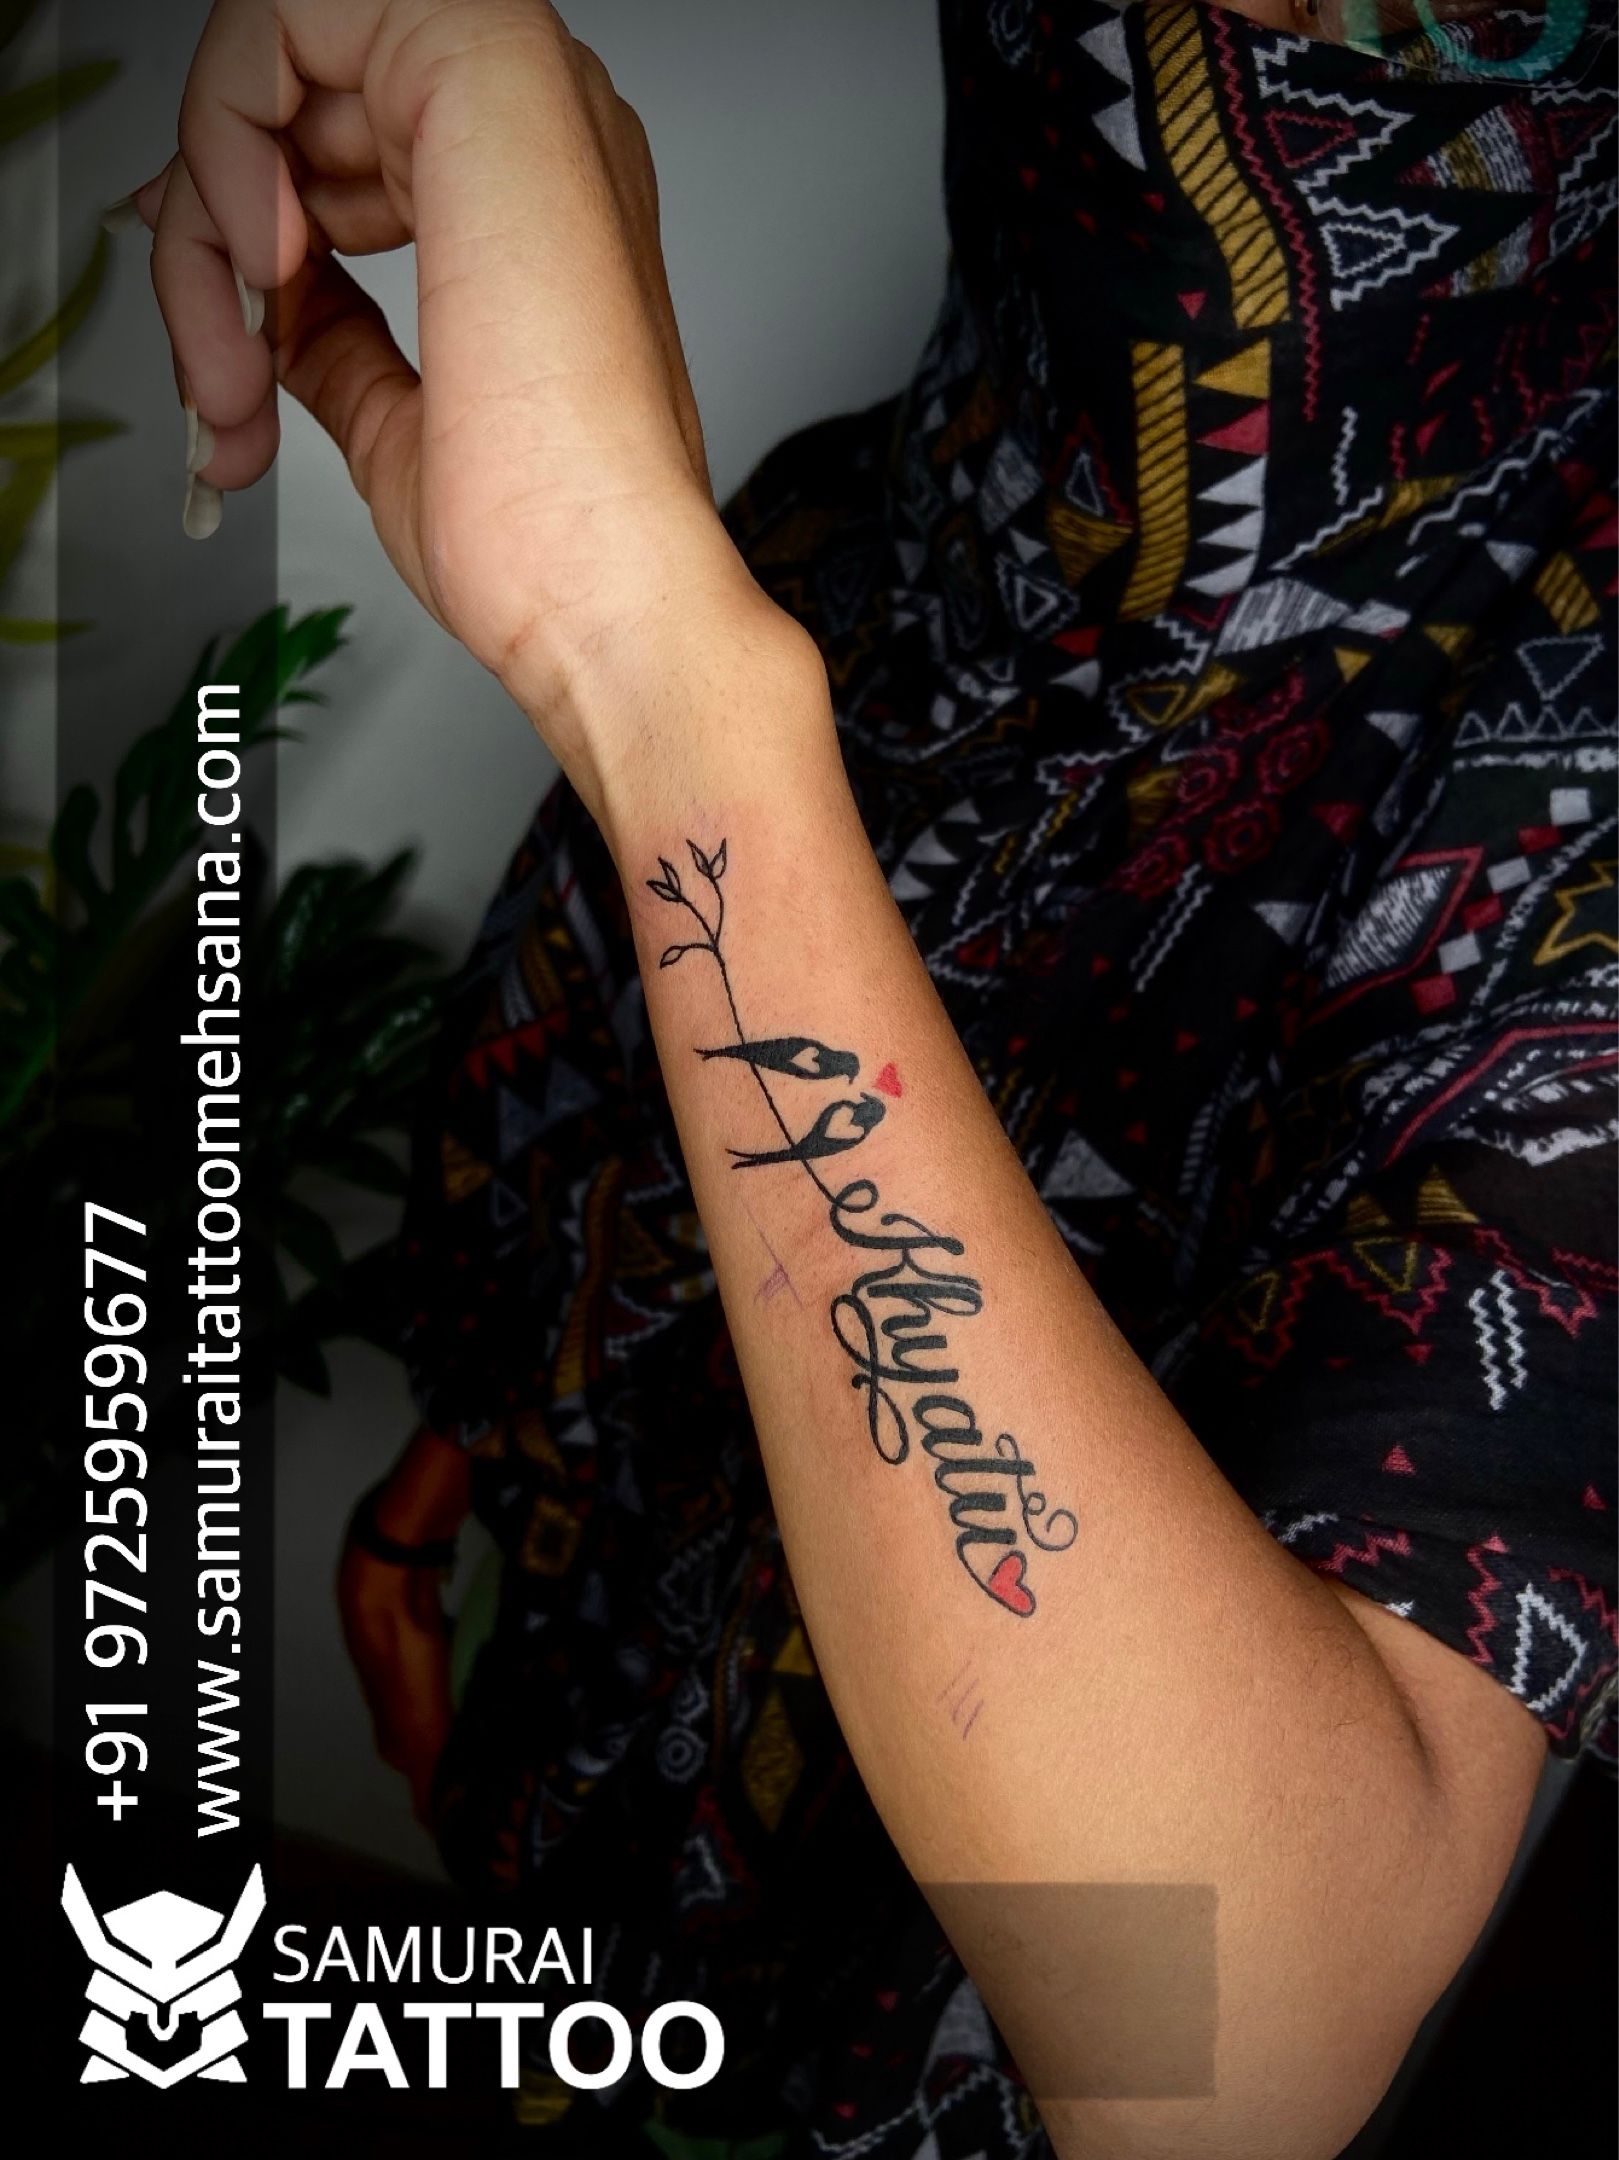 Script Tattoo | Name tattoo designs, Tattoo lettering, Name tattoo